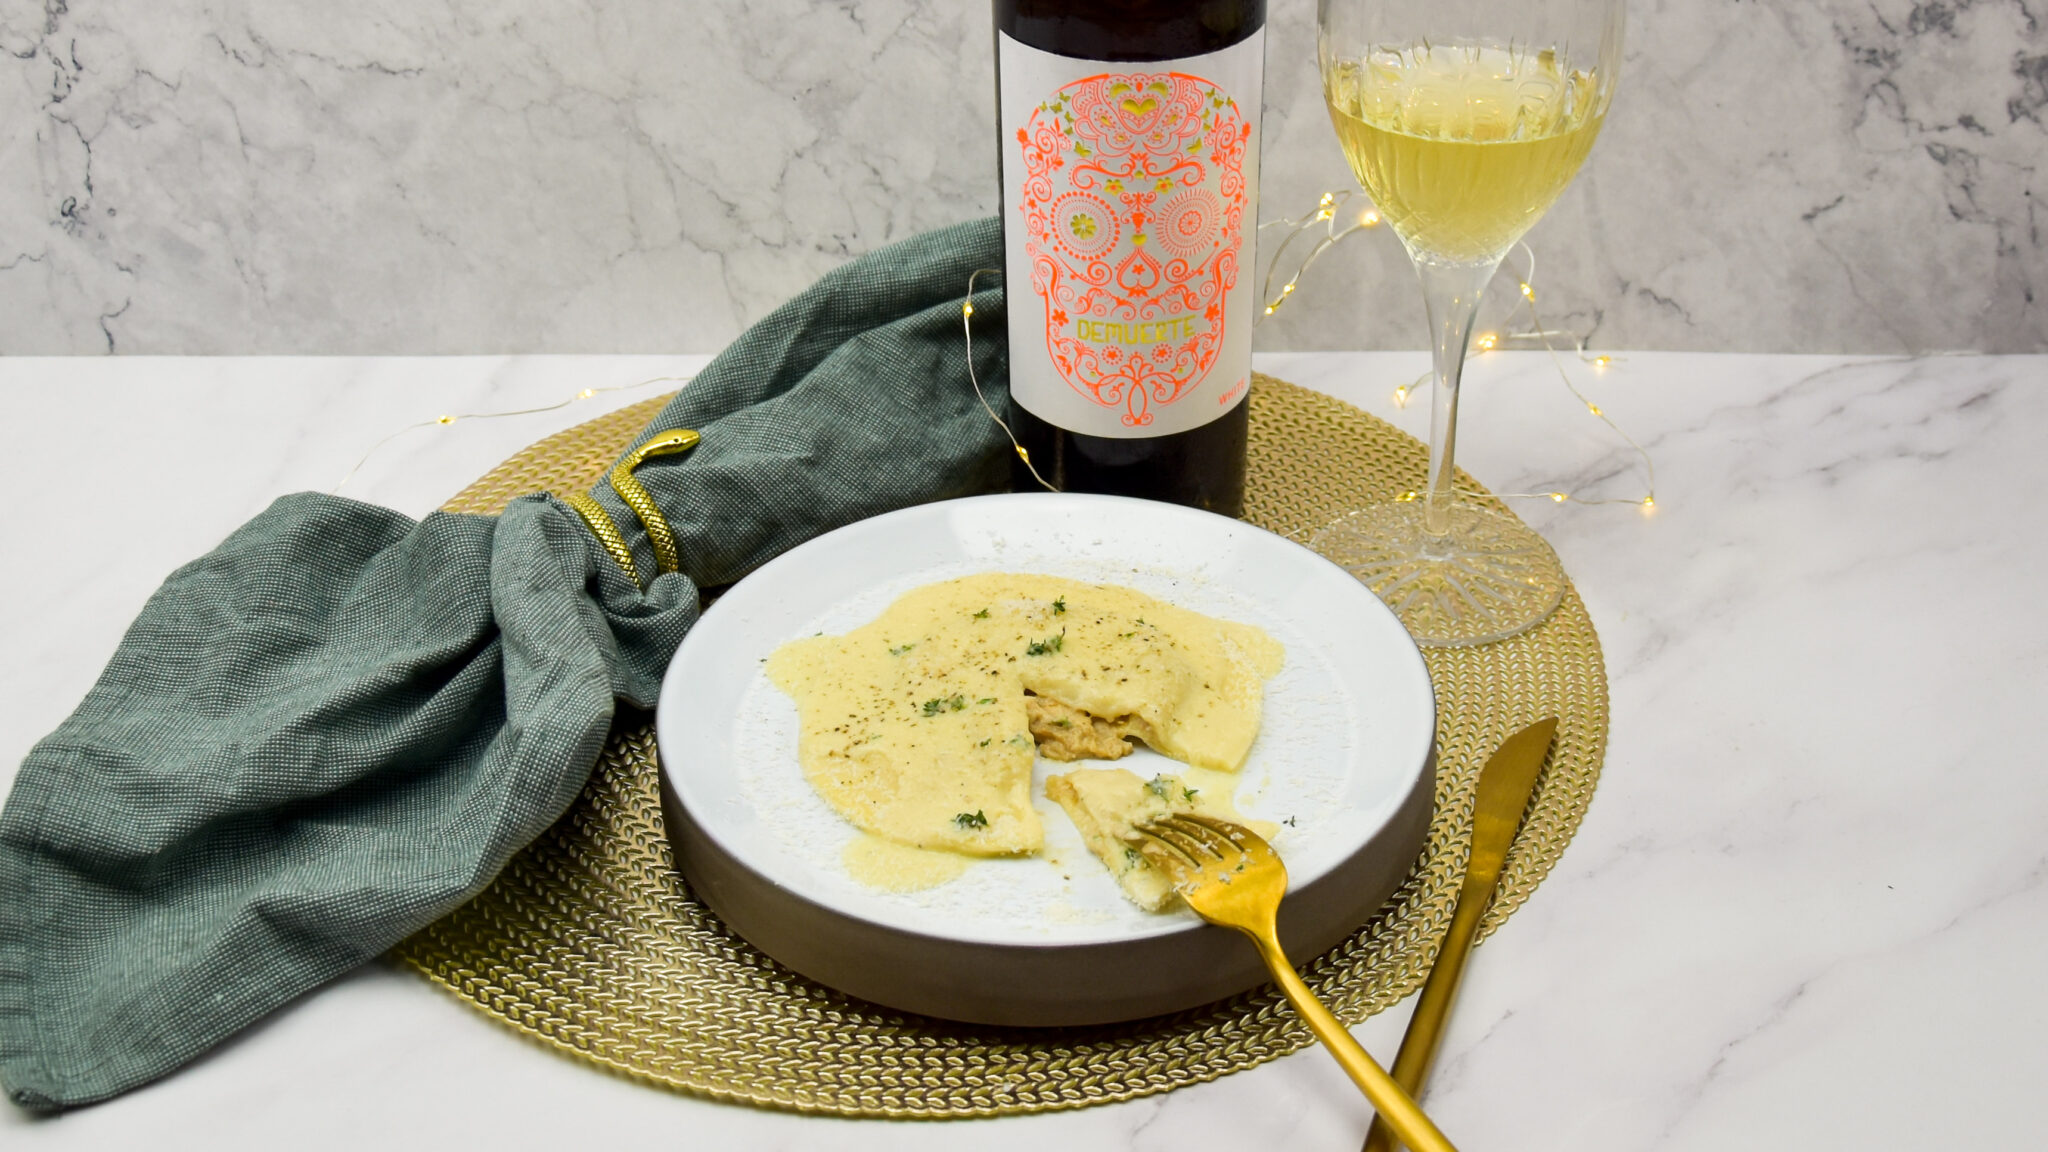 Reuze ravioli met konijn en witte wijnsaus